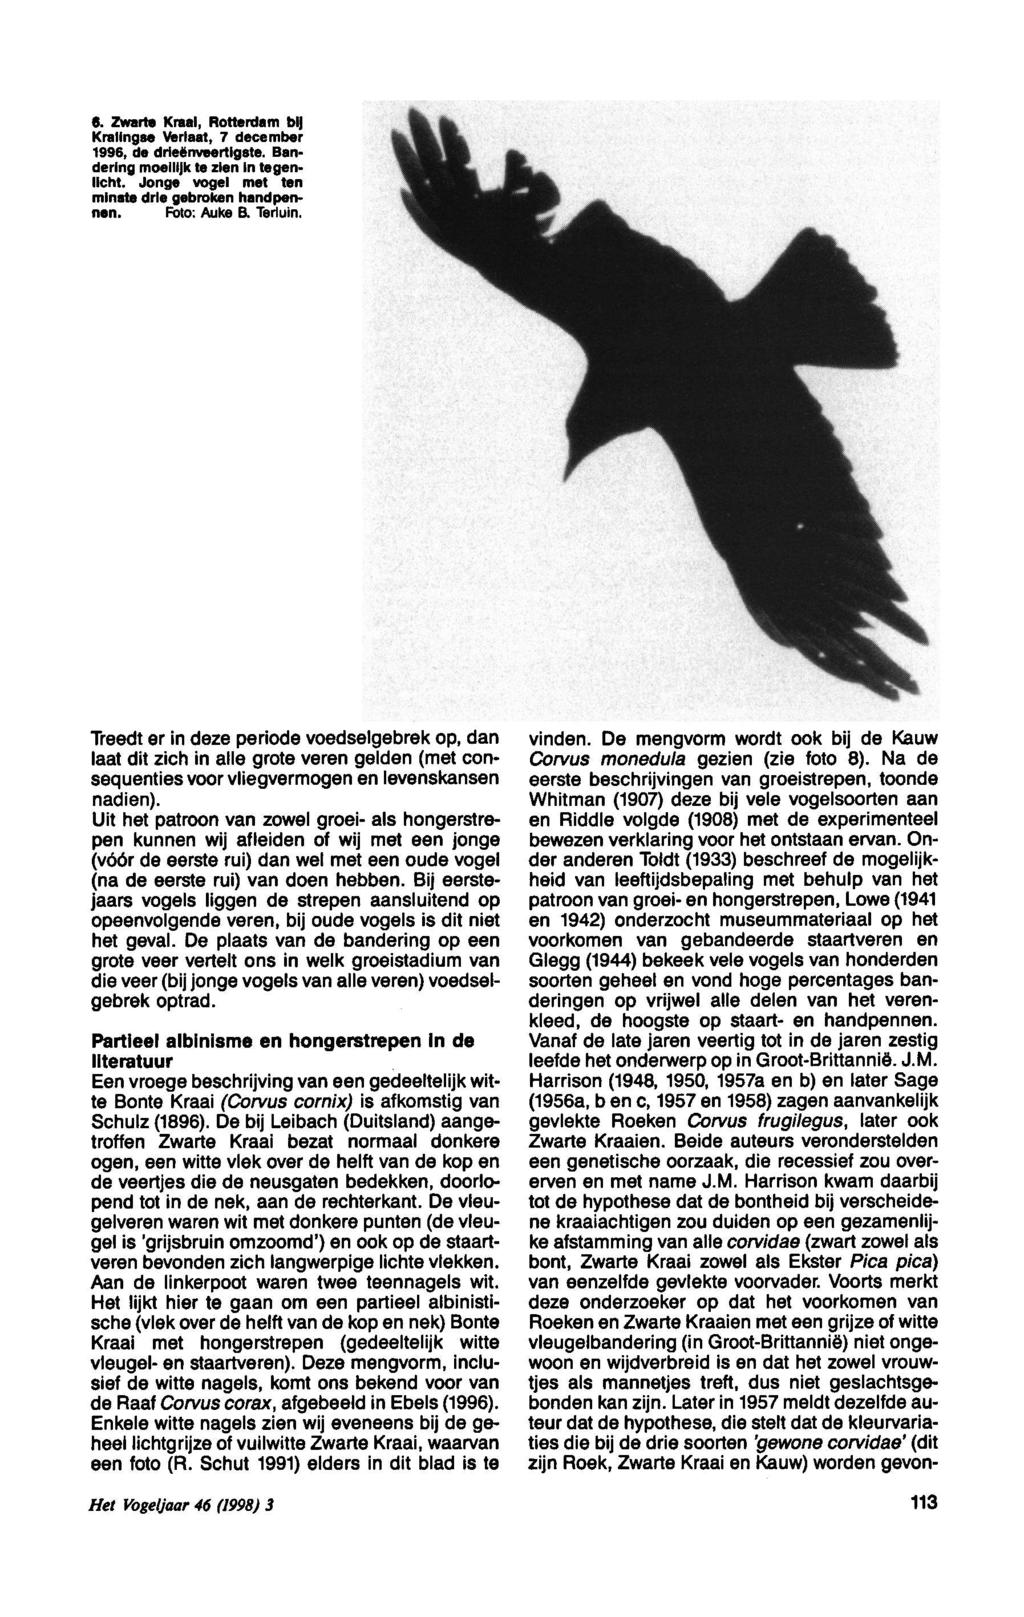 6. Zwar Kraal, Rotrdam Kralgse Vlaat, 7 cemb 1996, drieënvetigs. Banrg moeilijk zi glicht. Jonge vogel t ms drie gebrok hand pn. Foto: Auke B. Tlu. Treedt ze pio voedselgebrek, vn.